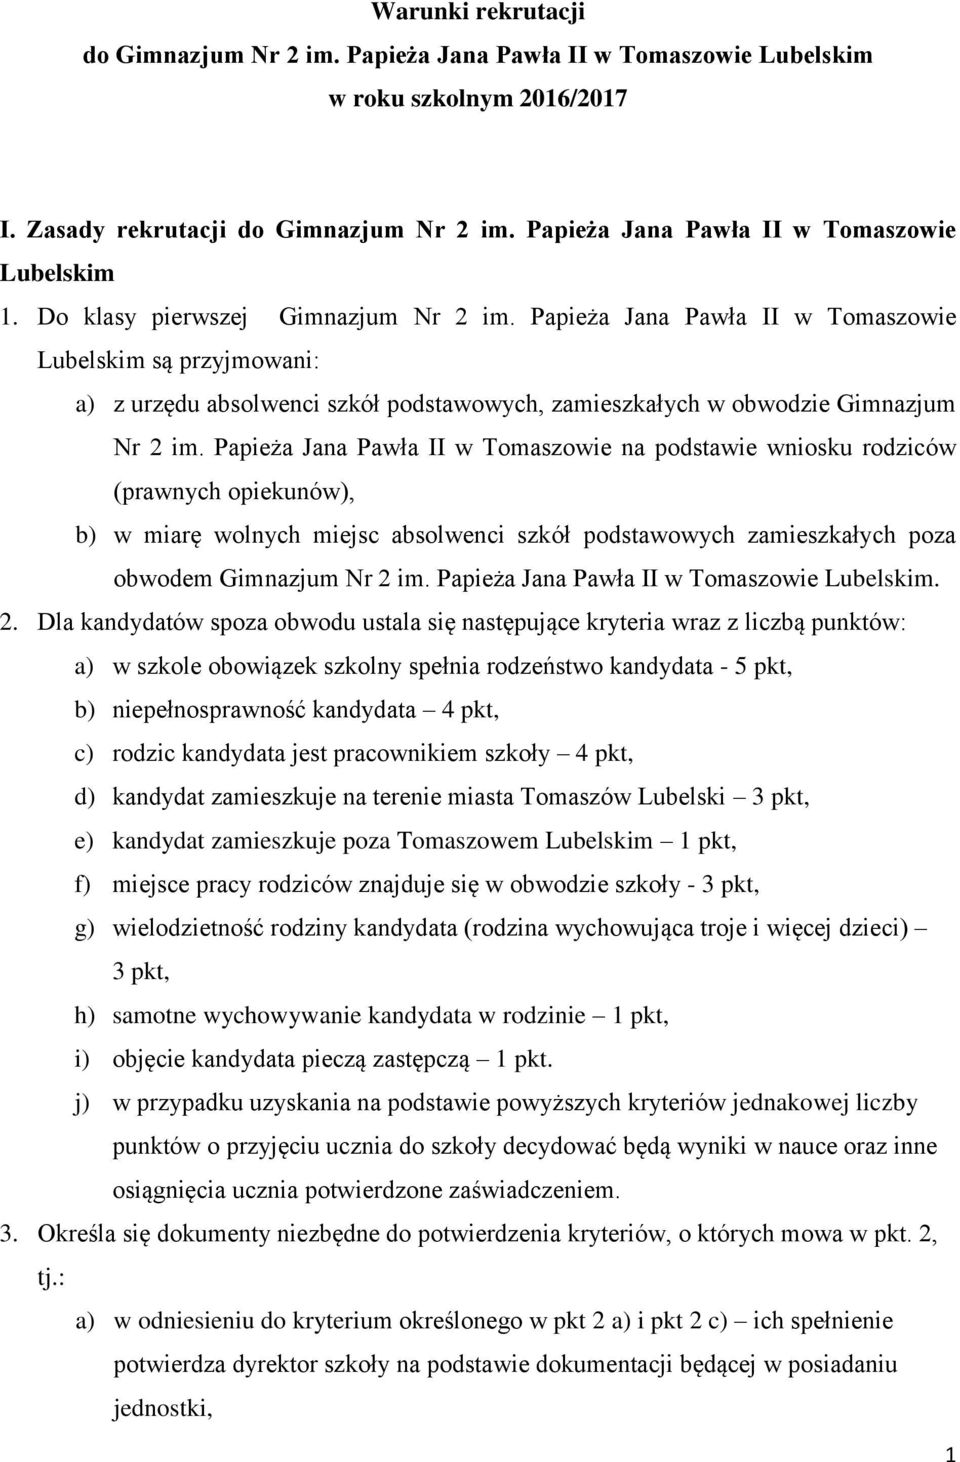 Papieża Jana Pawła II w Tomaszowie Lubelskim są przyjmowani: a) z urzędu absolwenci szkół podstawowych, zamieszkałych w obwodzie Gimnazjum Nr 2 im.